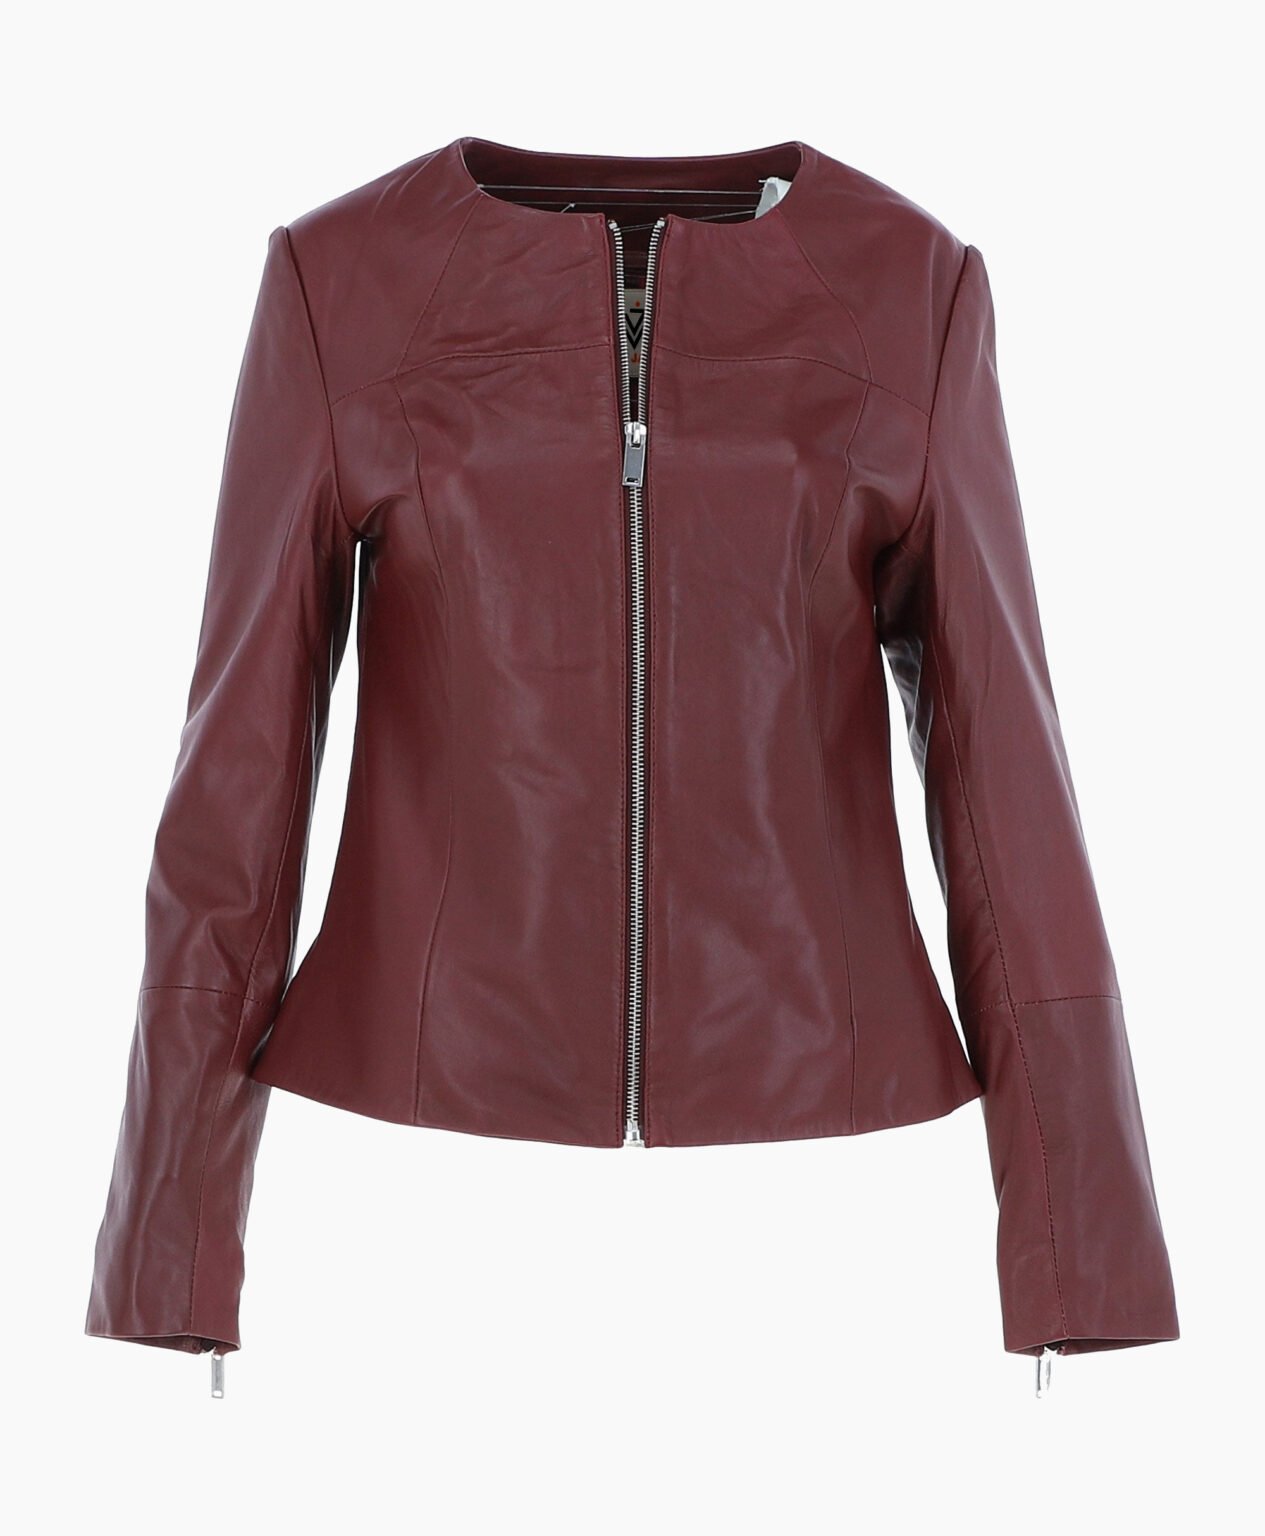 vogue-jacket-leather-fashion-jacket-oxblood-elizabeth-image200